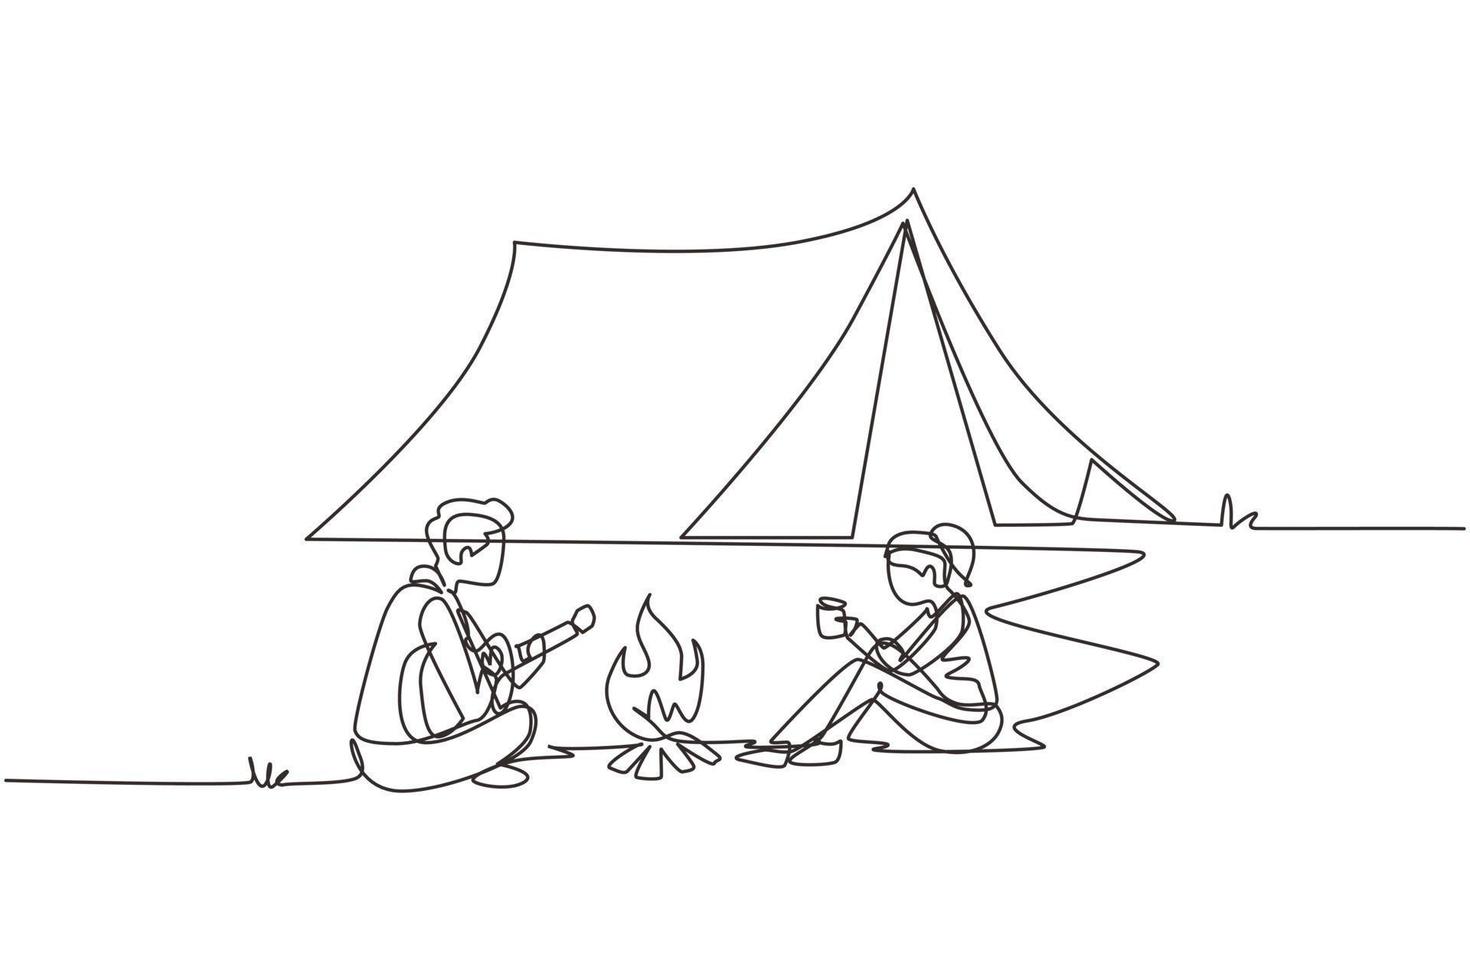 pareja de camping de dibujo de una sola línea continua alrededor de tiendas de campaña. hombre tocando guitarra y mujer bebiendo té caliente calentándose cerca de la hoguera sentada en el suelo. ilustración de vector de diseño de dibujo de una línea